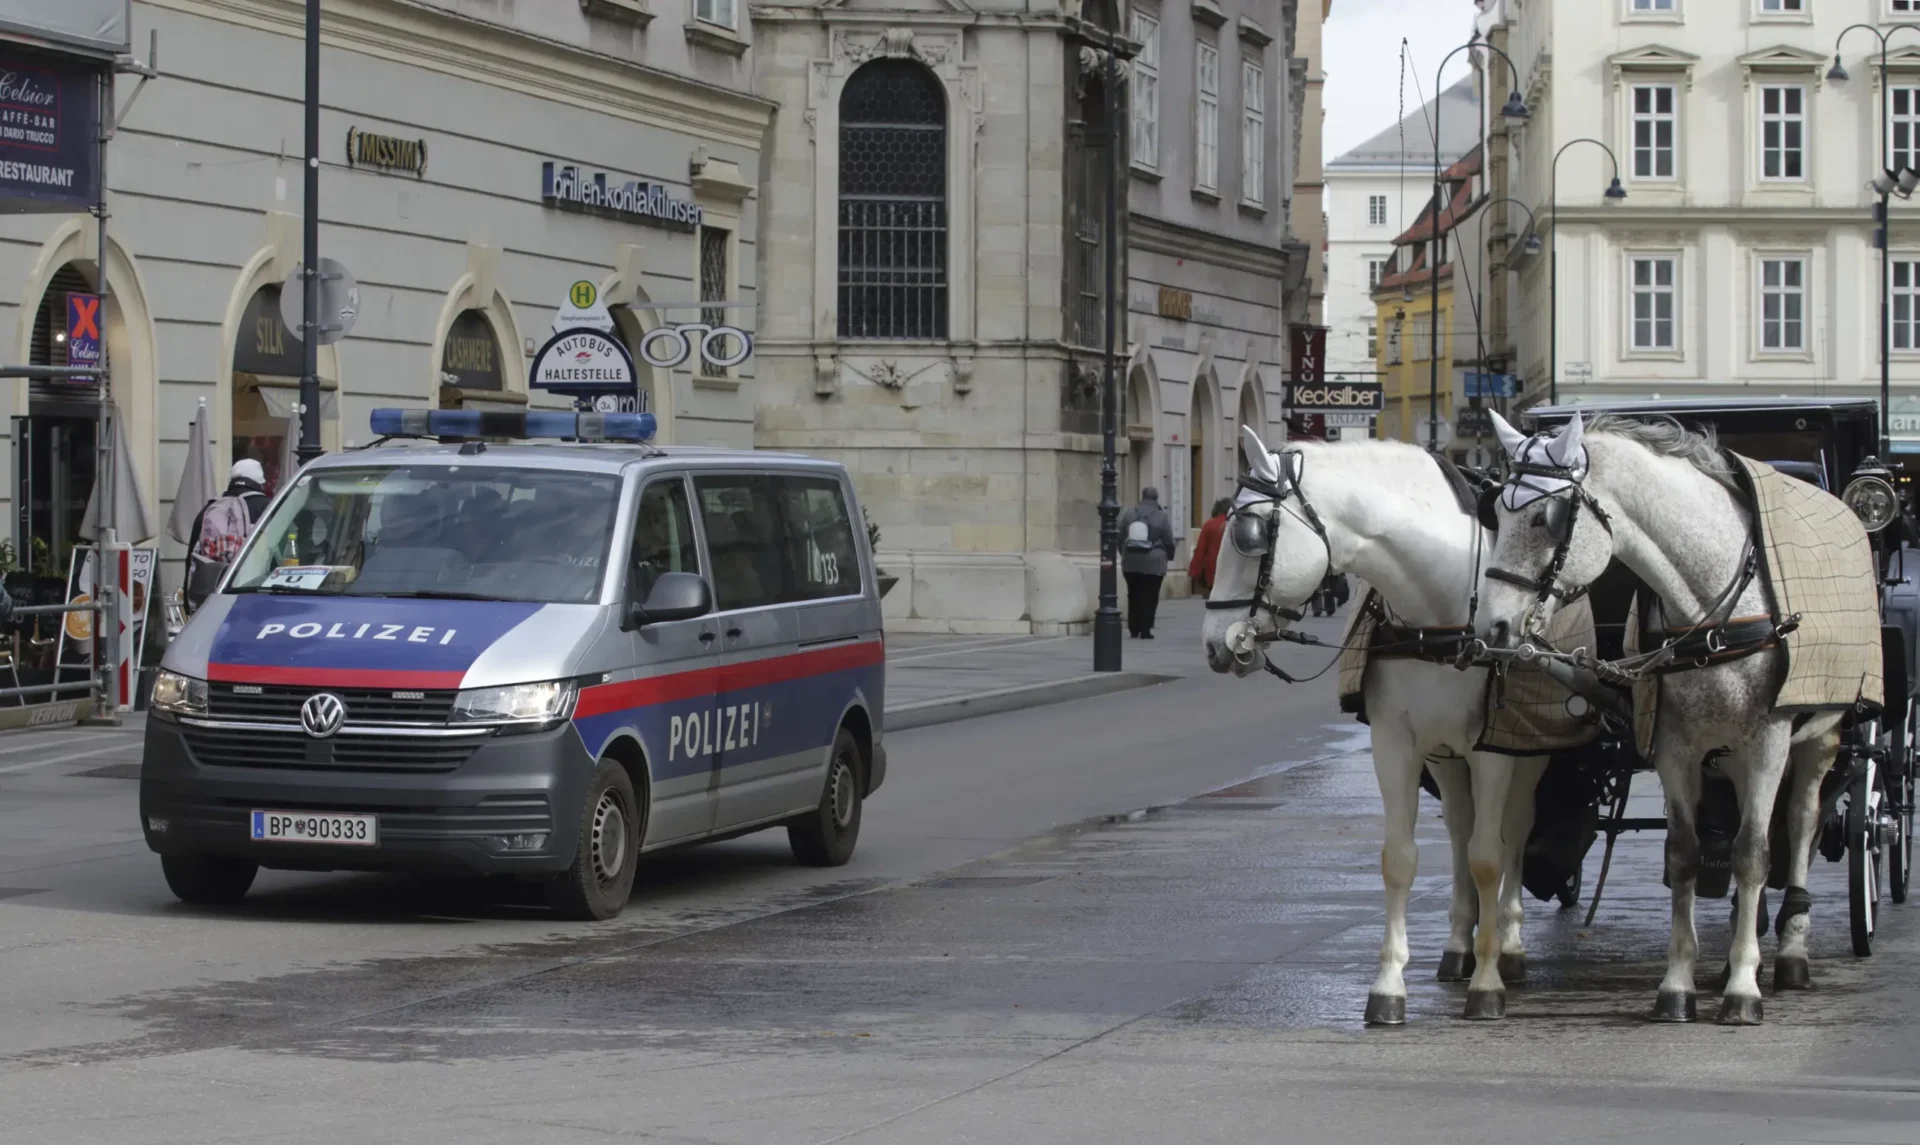 Policía austriaca: Posible amenaza a lugares de culto en Viena